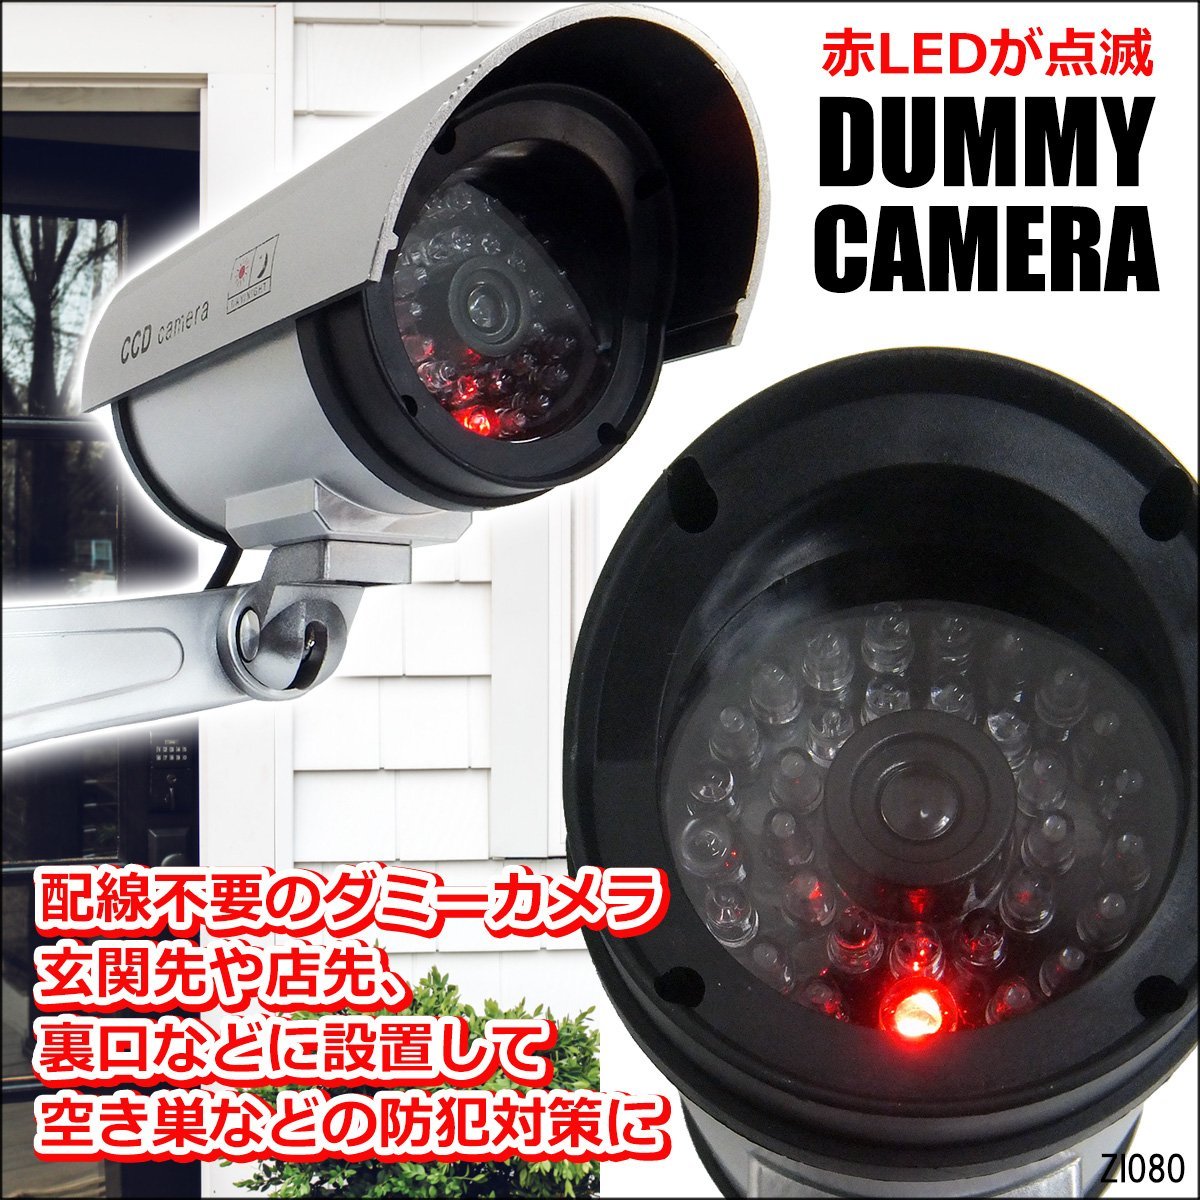 防犯グッズ2 ダミーカメラ 防犯 防犯カメラ 1枚セット 赤 カメラ型 ステッカ